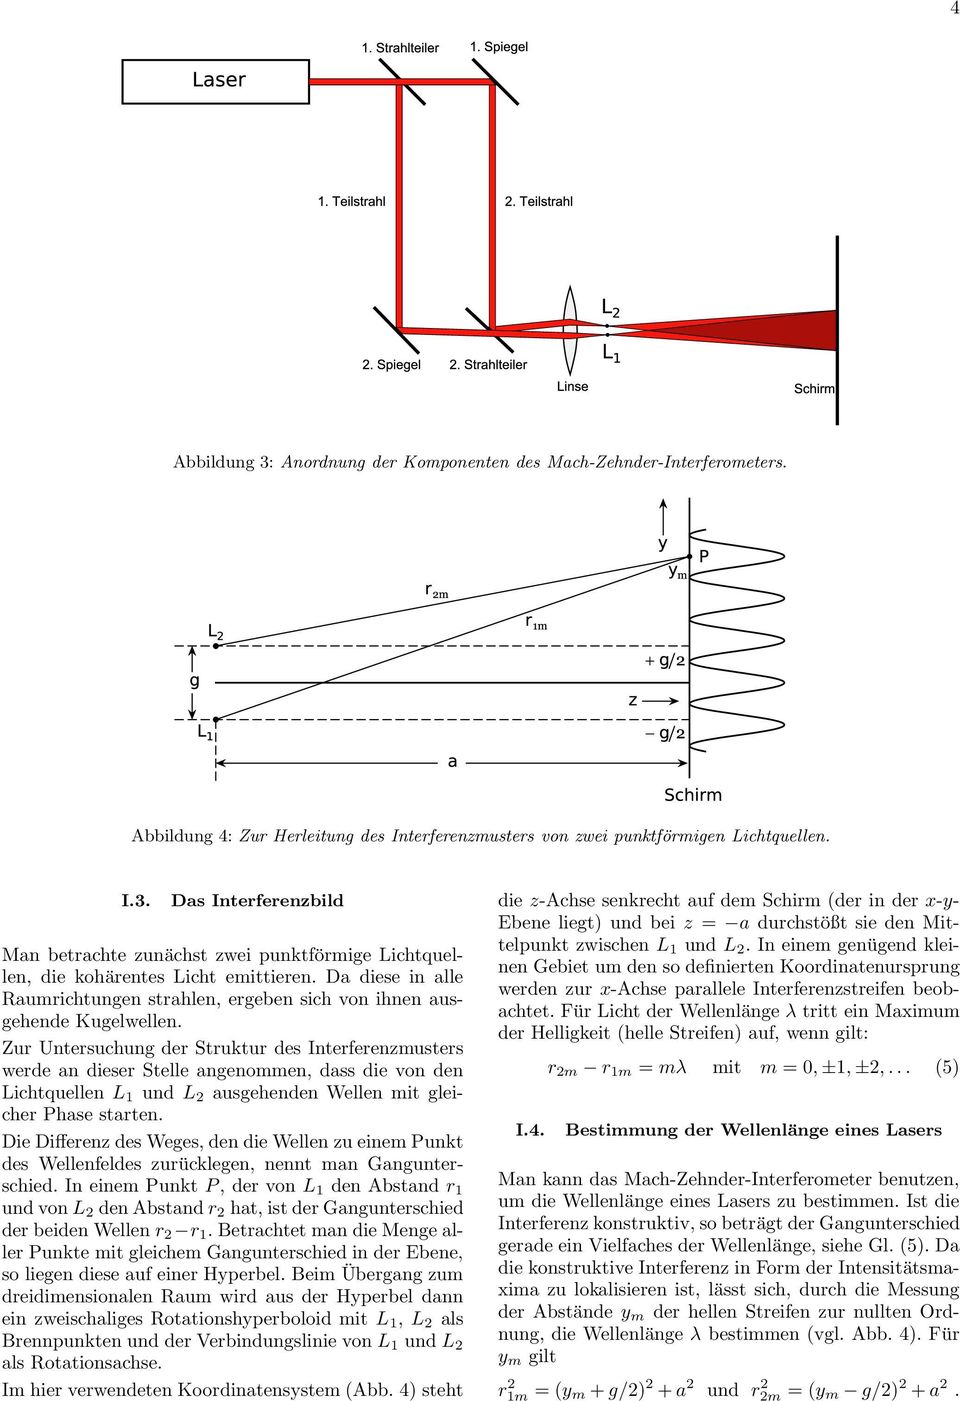 Zur Untersuchung der Struktur des Interferenzmusters werde an dieser Stelle angenommen, dass die von den Lichtquellen L 1 und L 2 ausgehenden Wellen mit gleicher Phase starten.